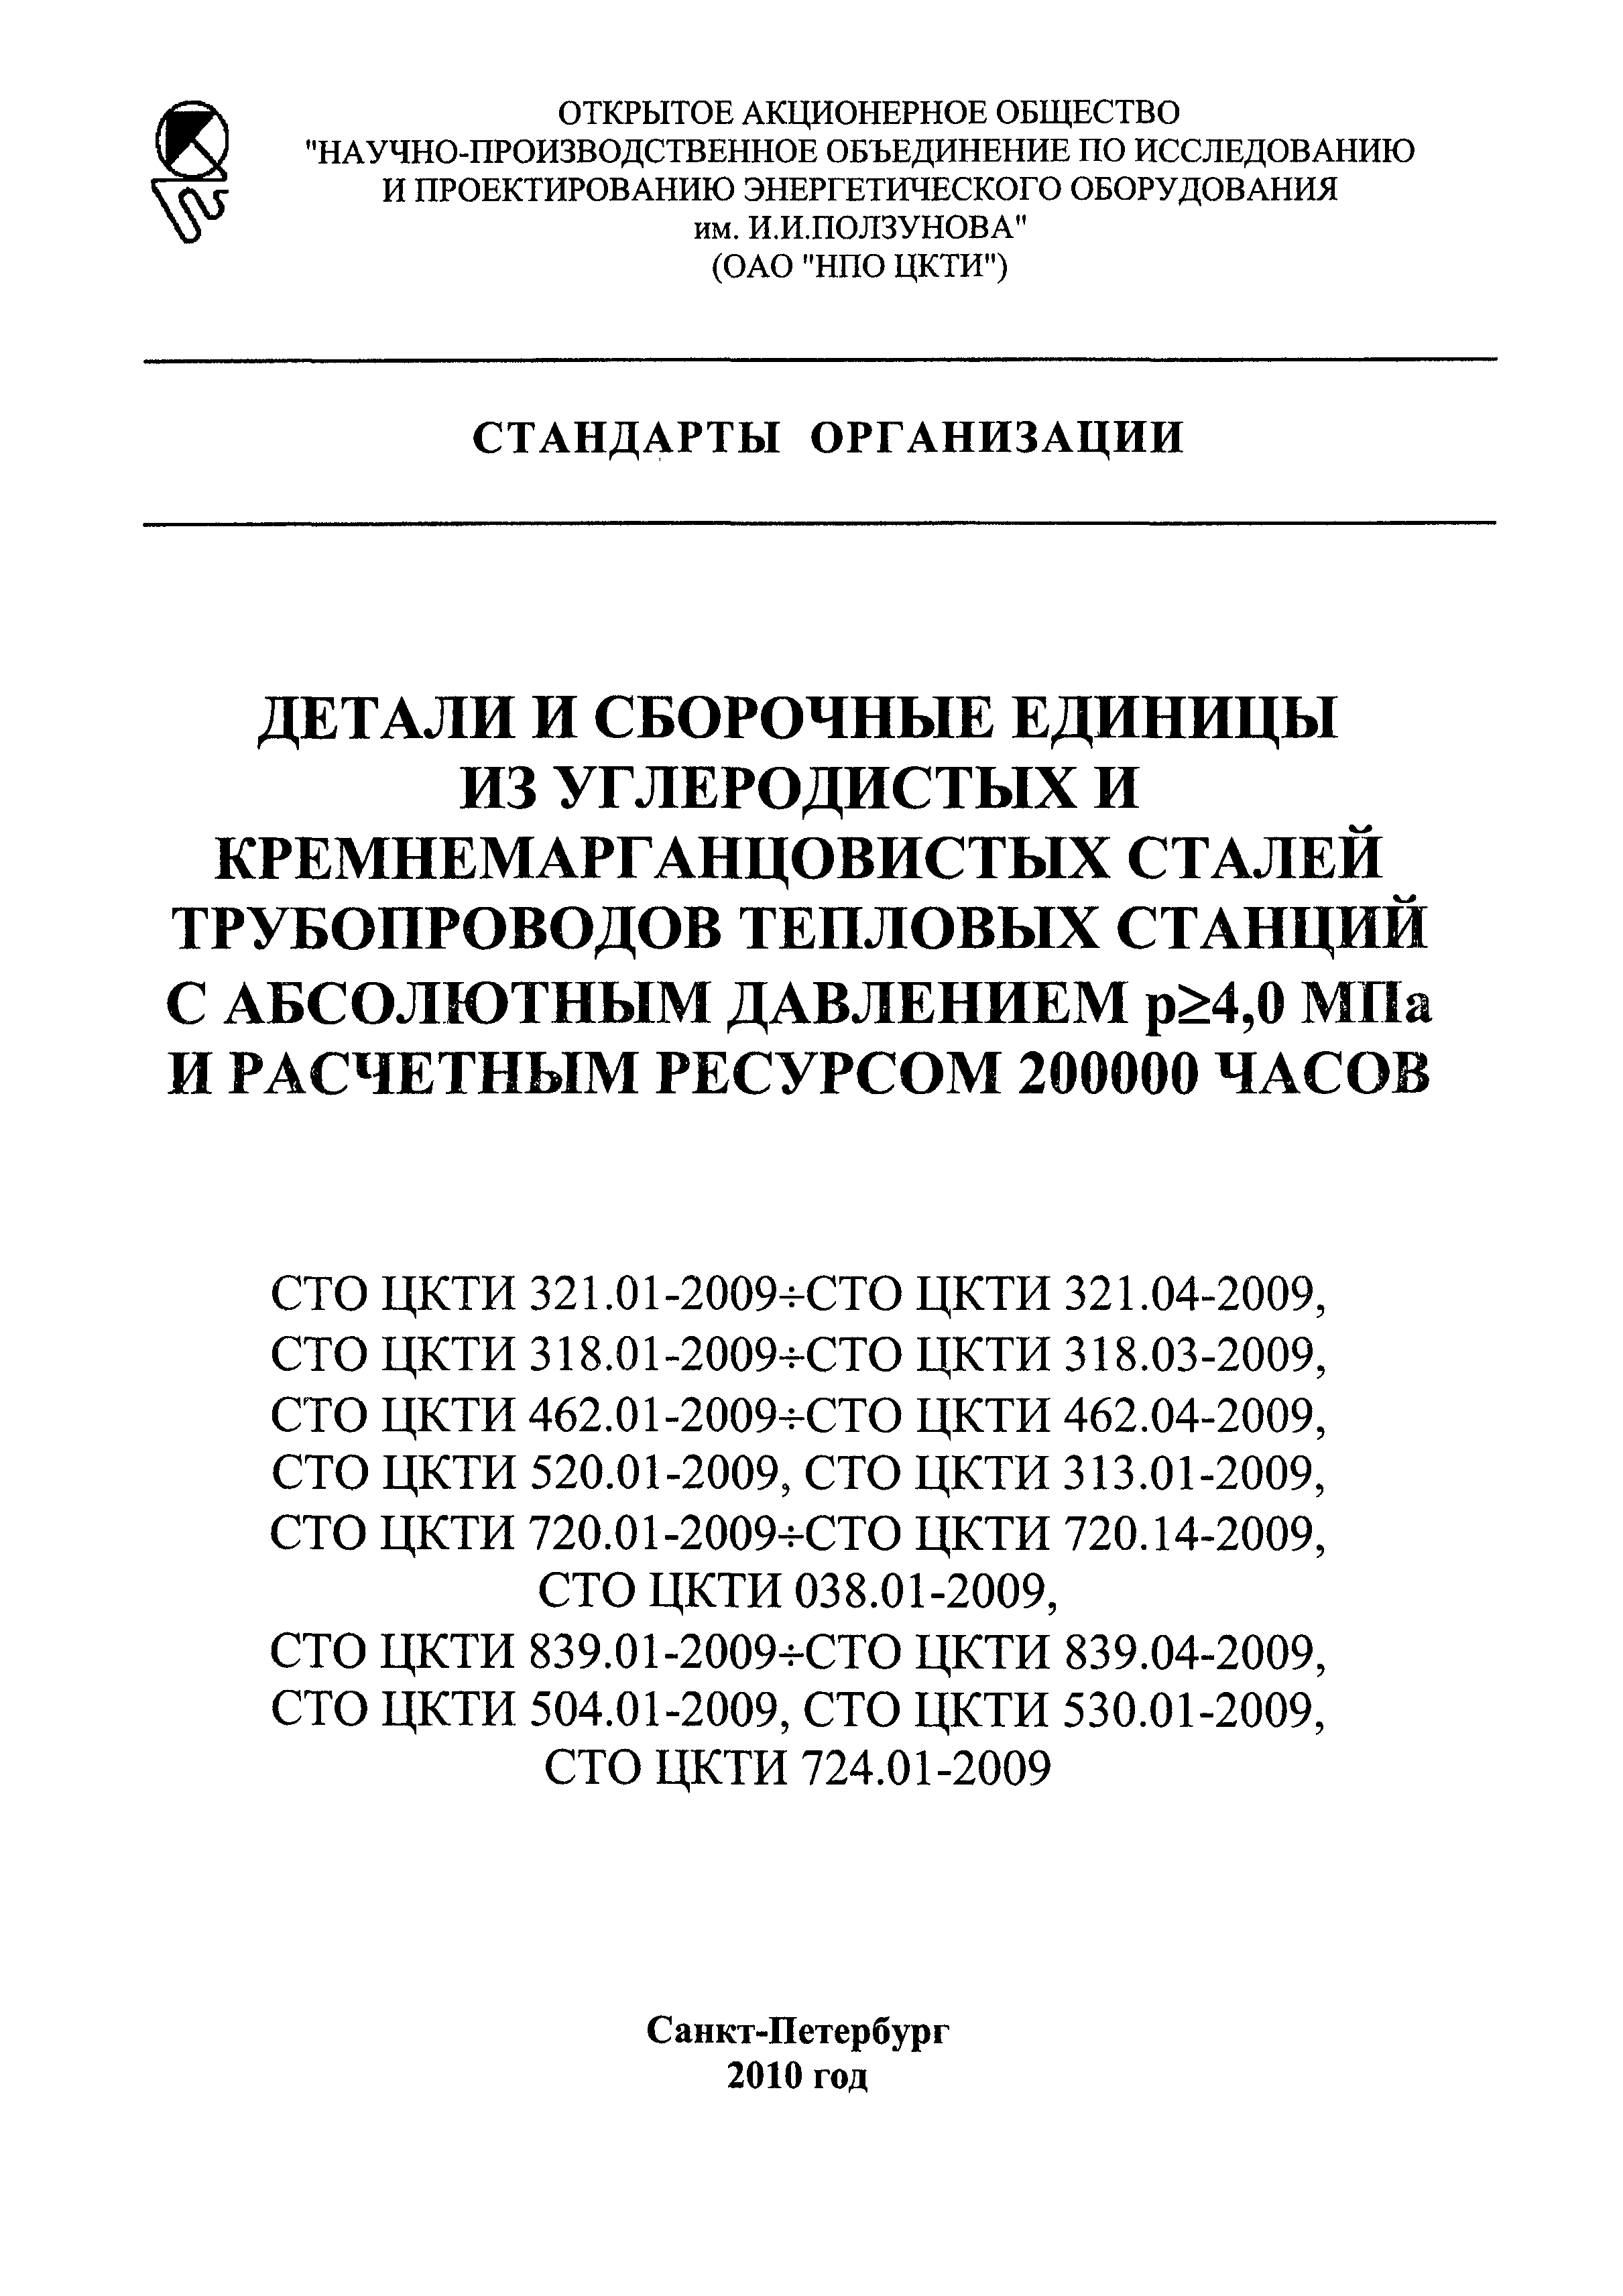 СТО ЦКТИ 839.04-2009